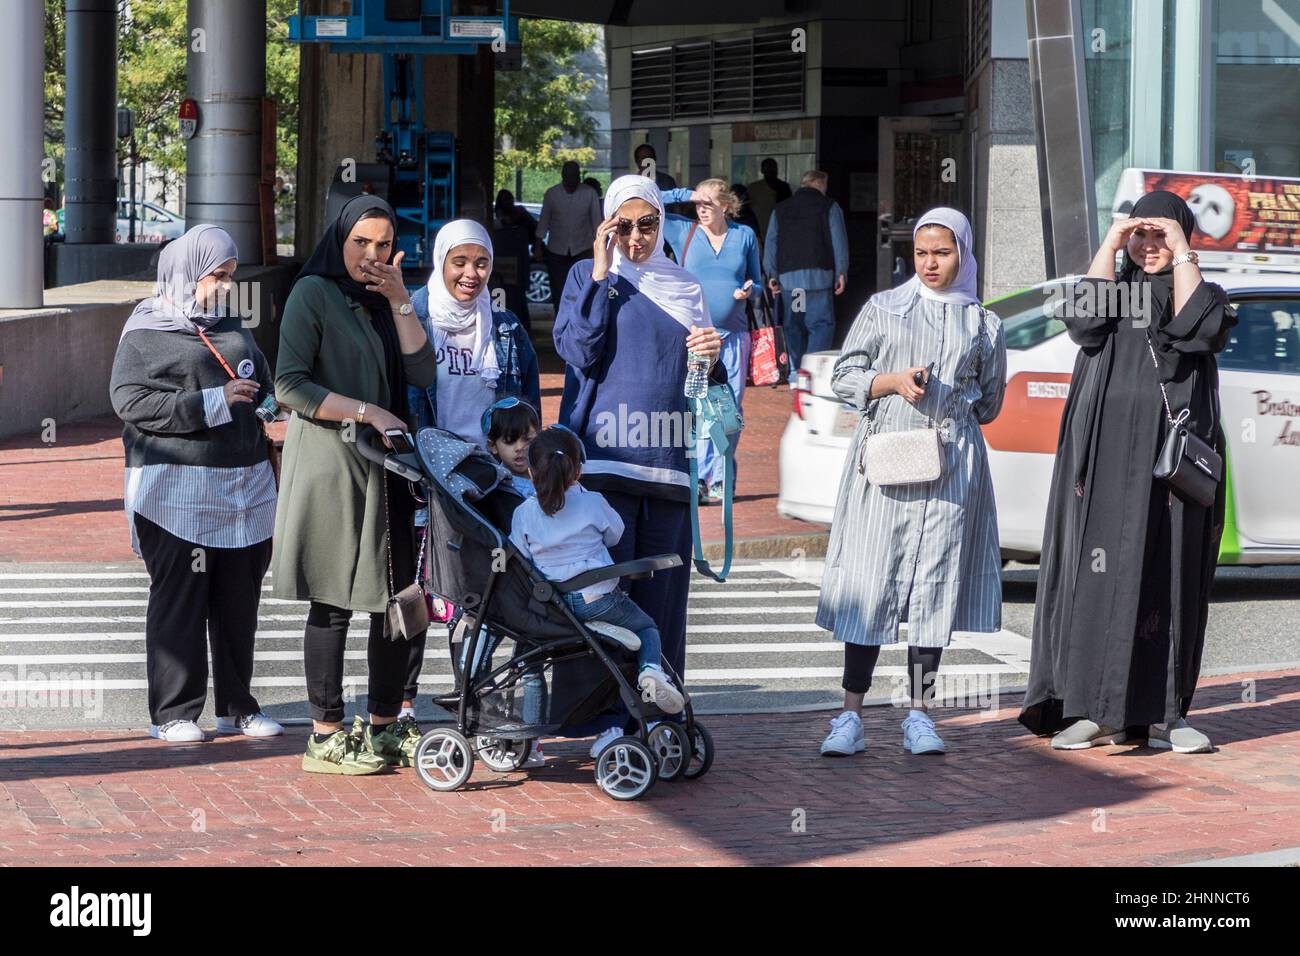 arabisch aussehende Frauen in traditioneller Kleidung mit Kopftuch, die an einer Fußgängerüberführung eine Straße überqueren Stockfoto